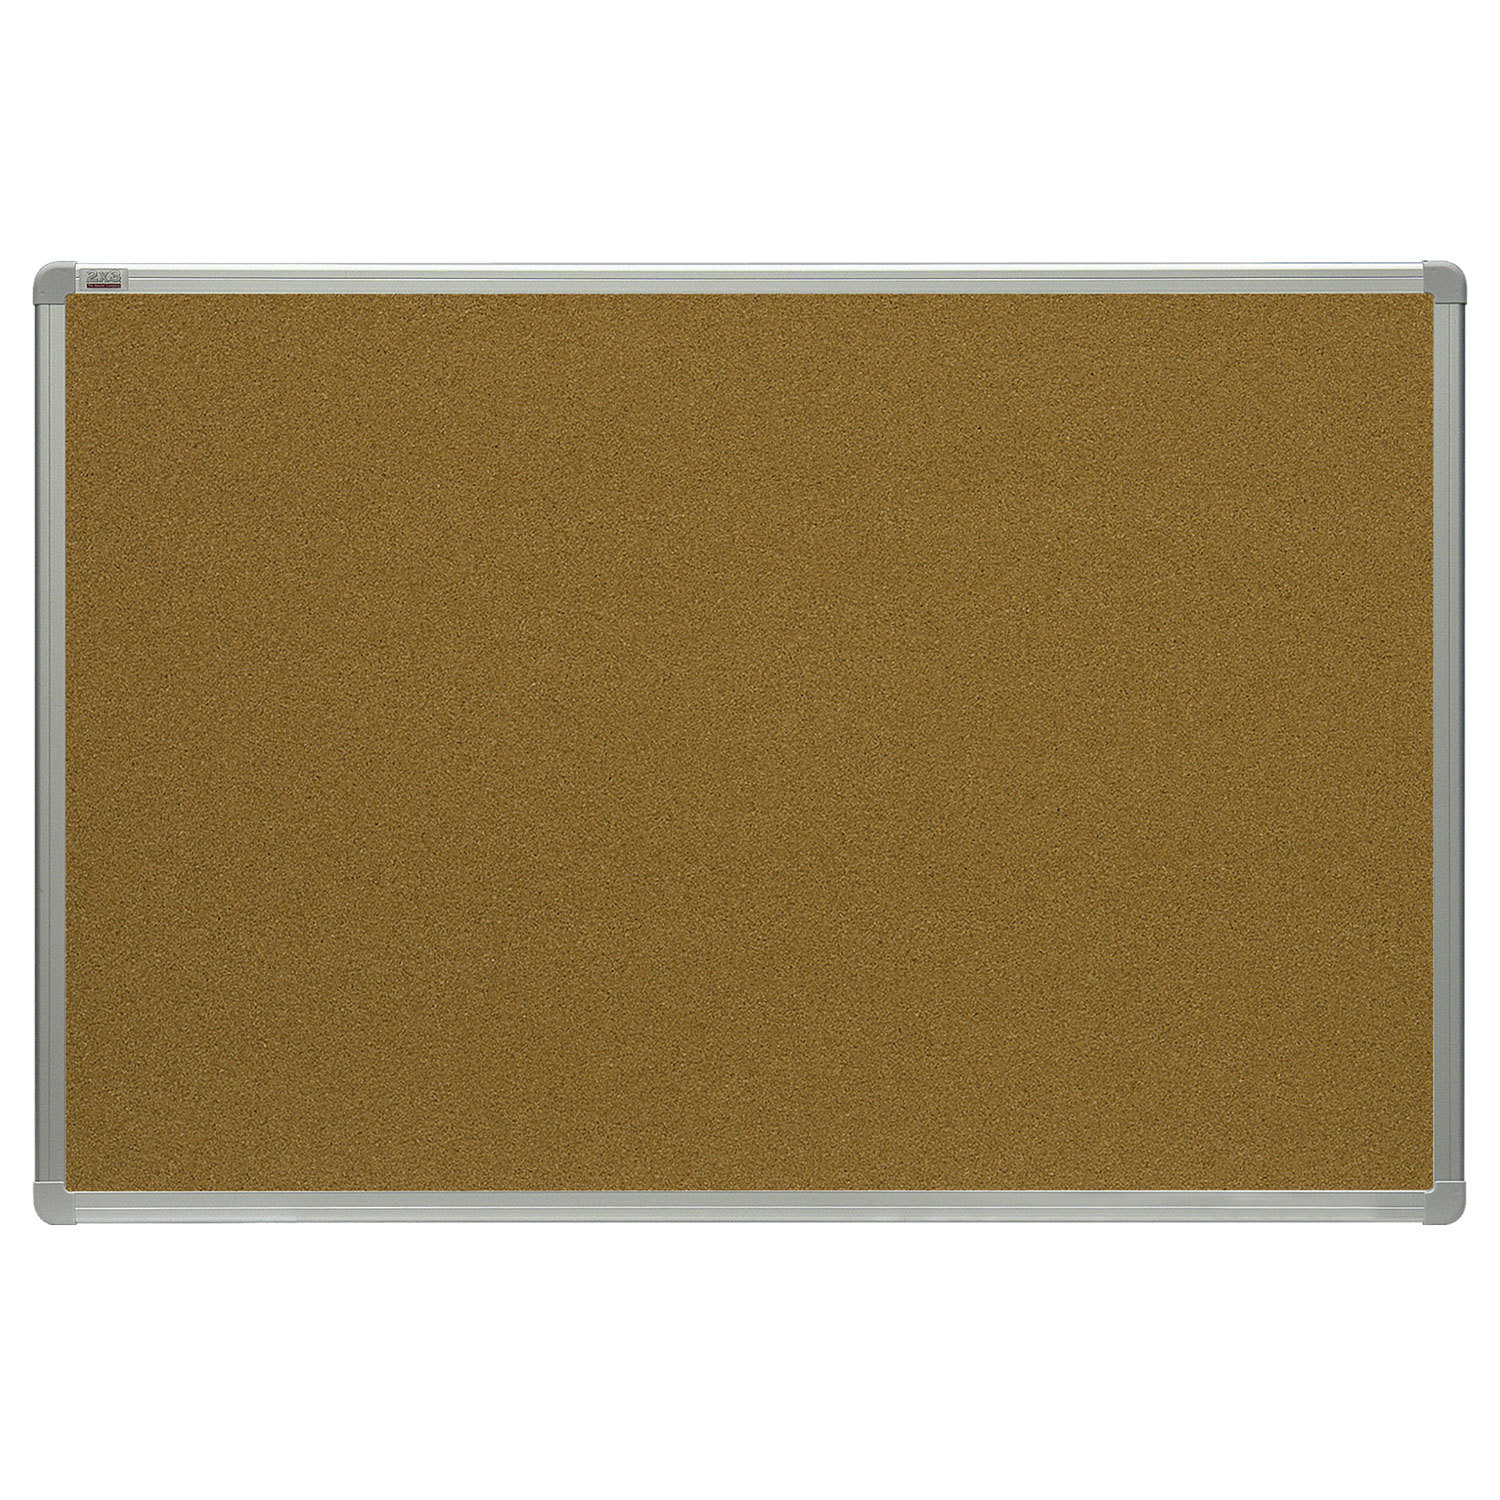 Демонстрационная доска 2X3 OFFICE пробковая, 120x180см, пробка (коричневый)/алюминий (серый) (TCA1218)